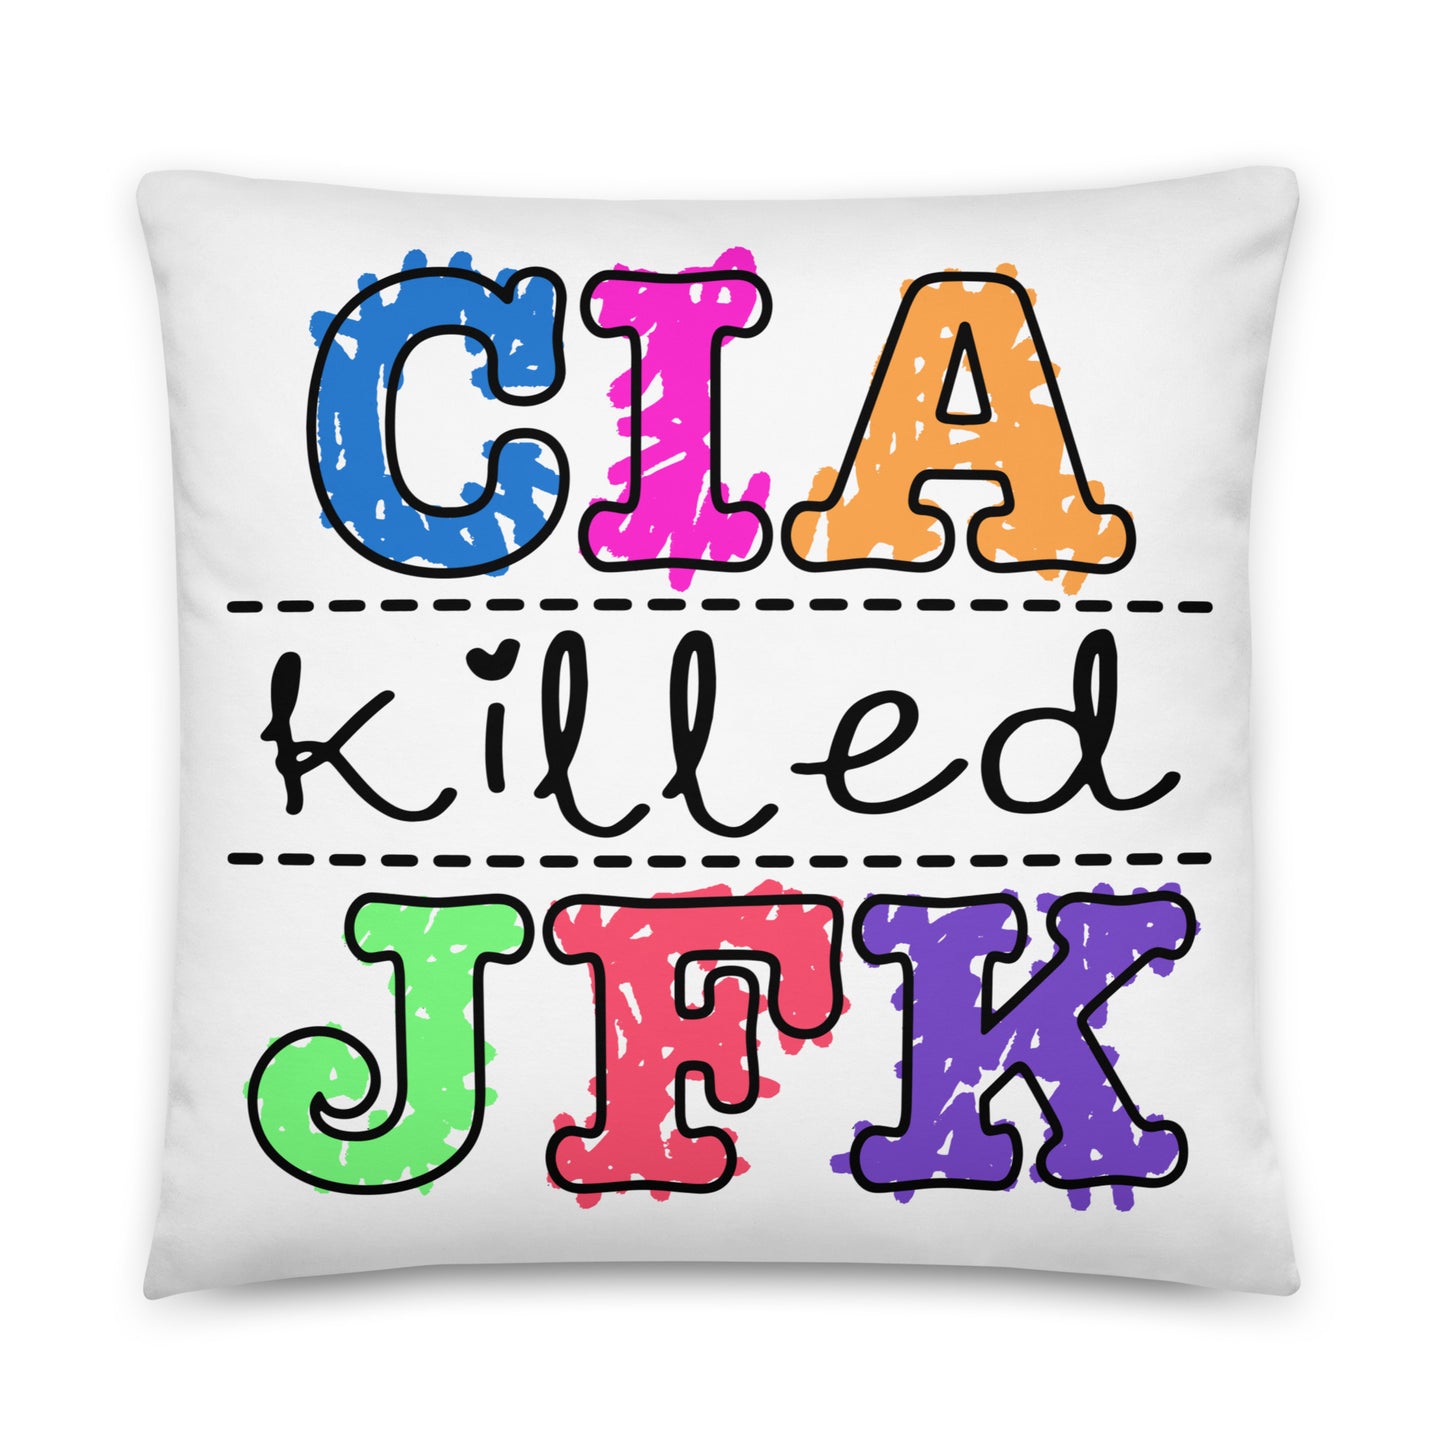 CIA Killed JFK Pillow.